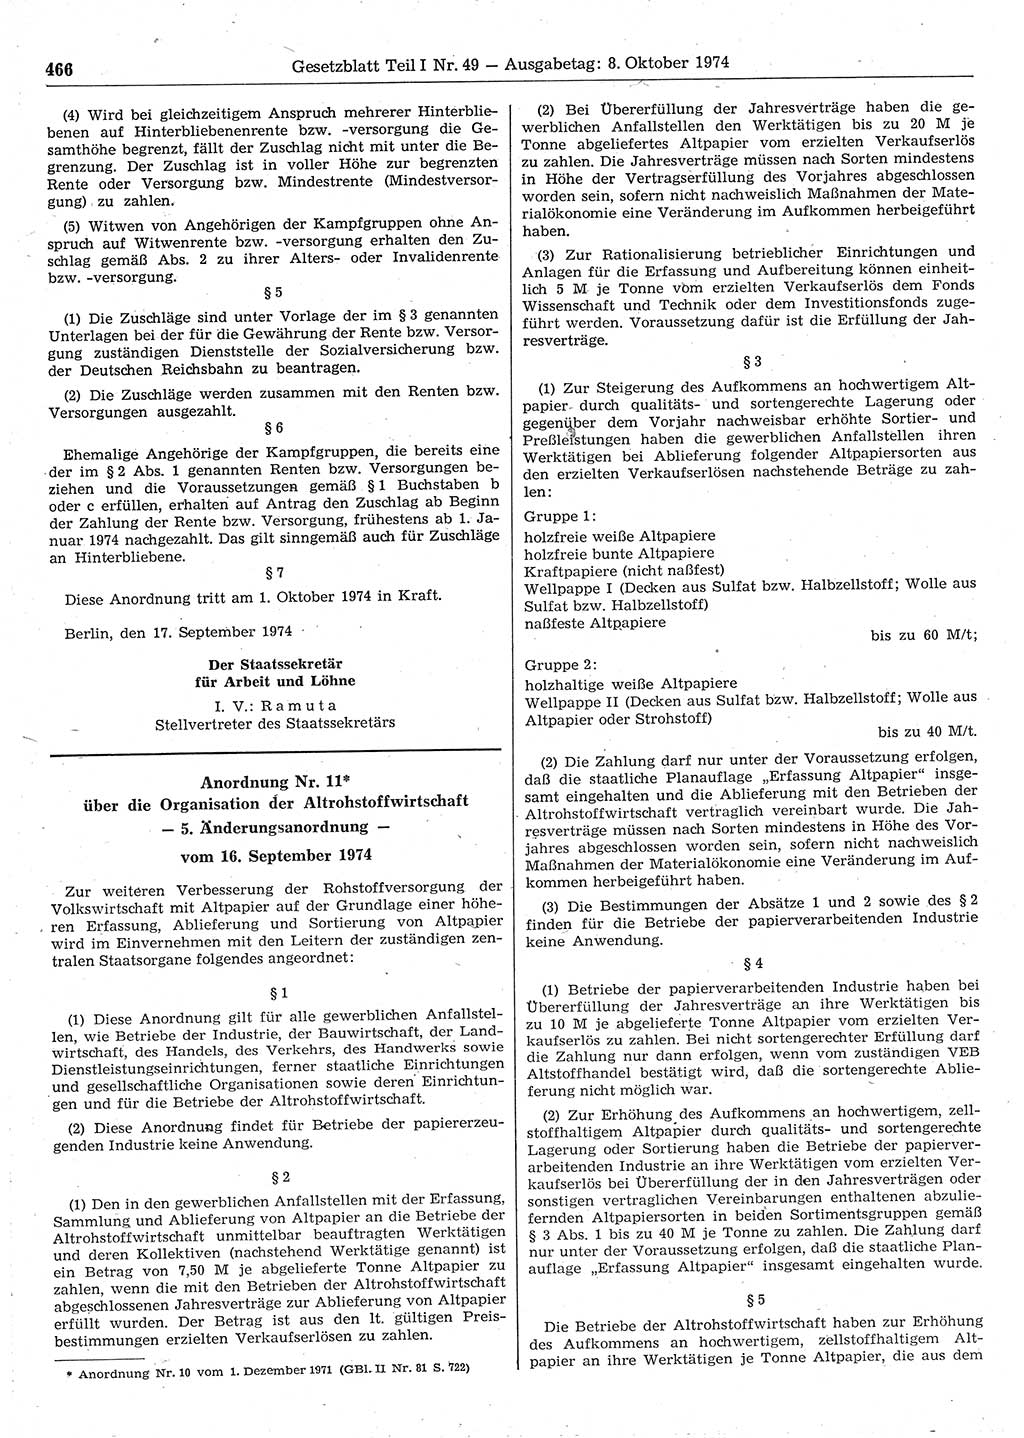 Gesetzblatt (GBl.) der Deutschen Demokratischen Republik (DDR) Teil Ⅰ 1974, Seite 466 (GBl. DDR Ⅰ 1974, S. 466)